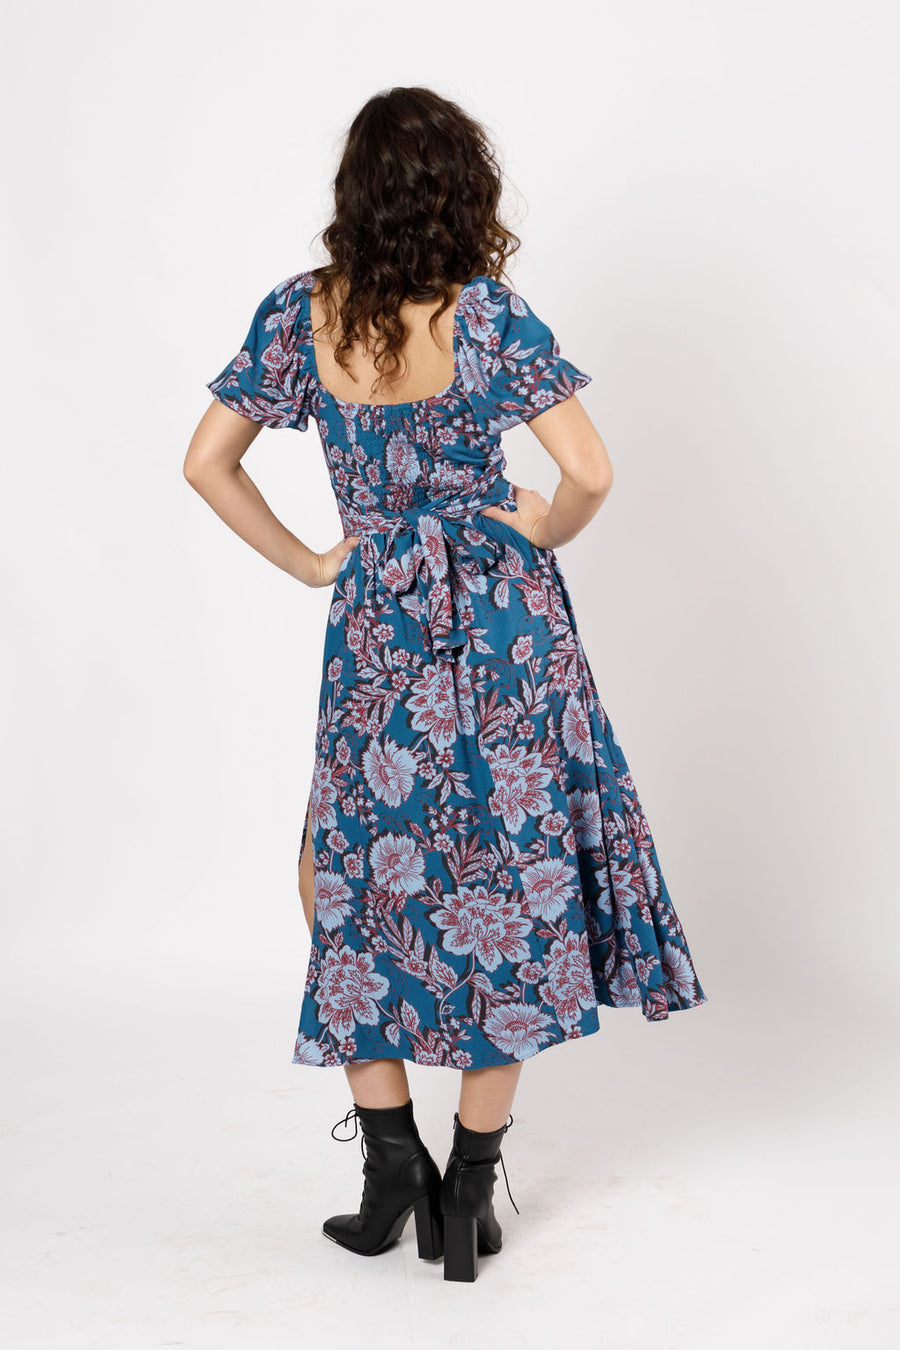 Gail Sapphire Floral Maxi Dress